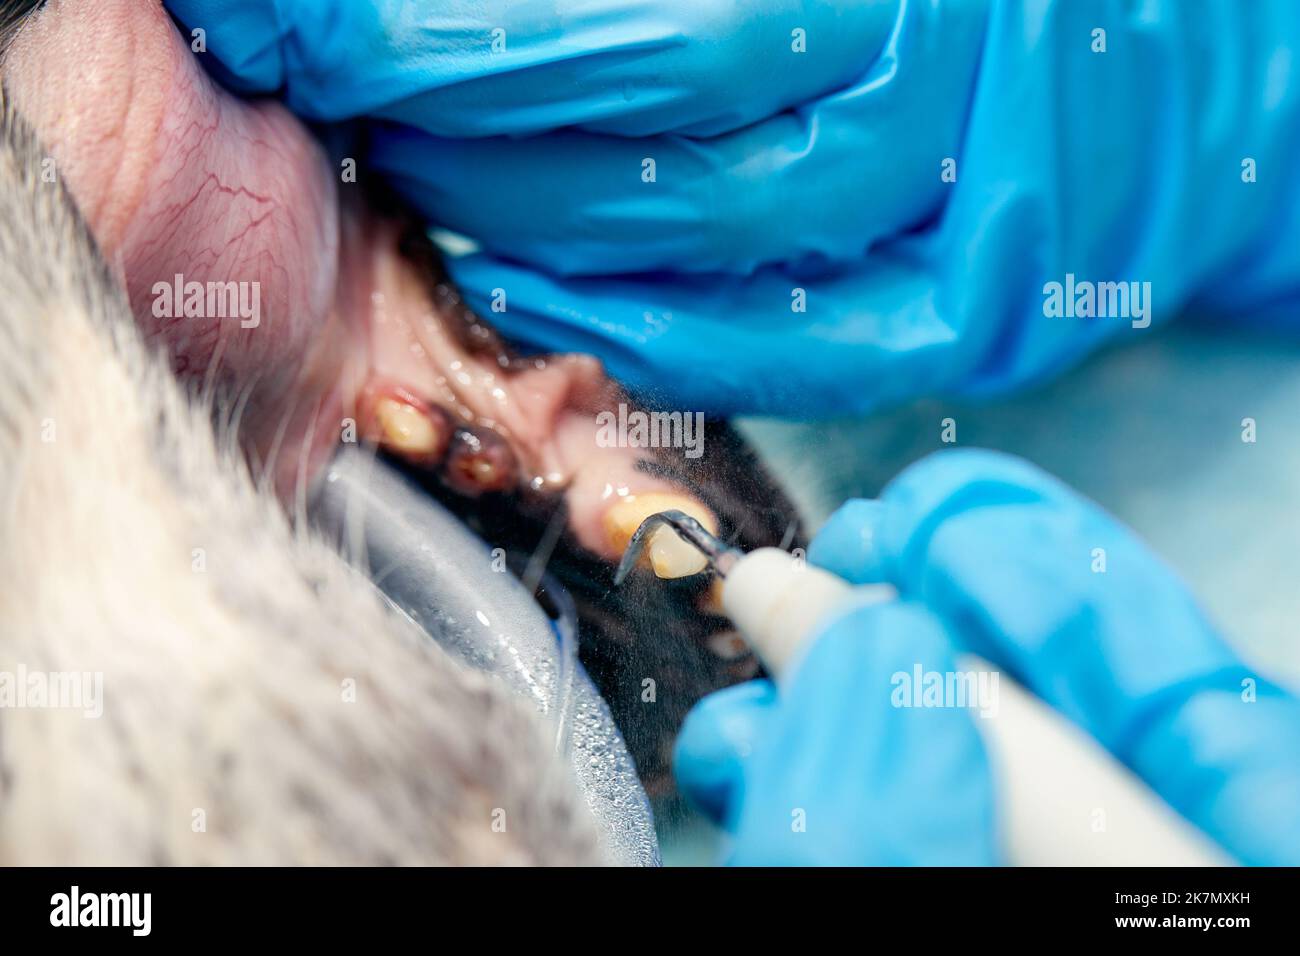 Odontología veterinaria. Cirujano dentista veterinario trata y elimina los dientes de un perro bajo anestesia general en el quirófano de un veterinario clini Foto de stock